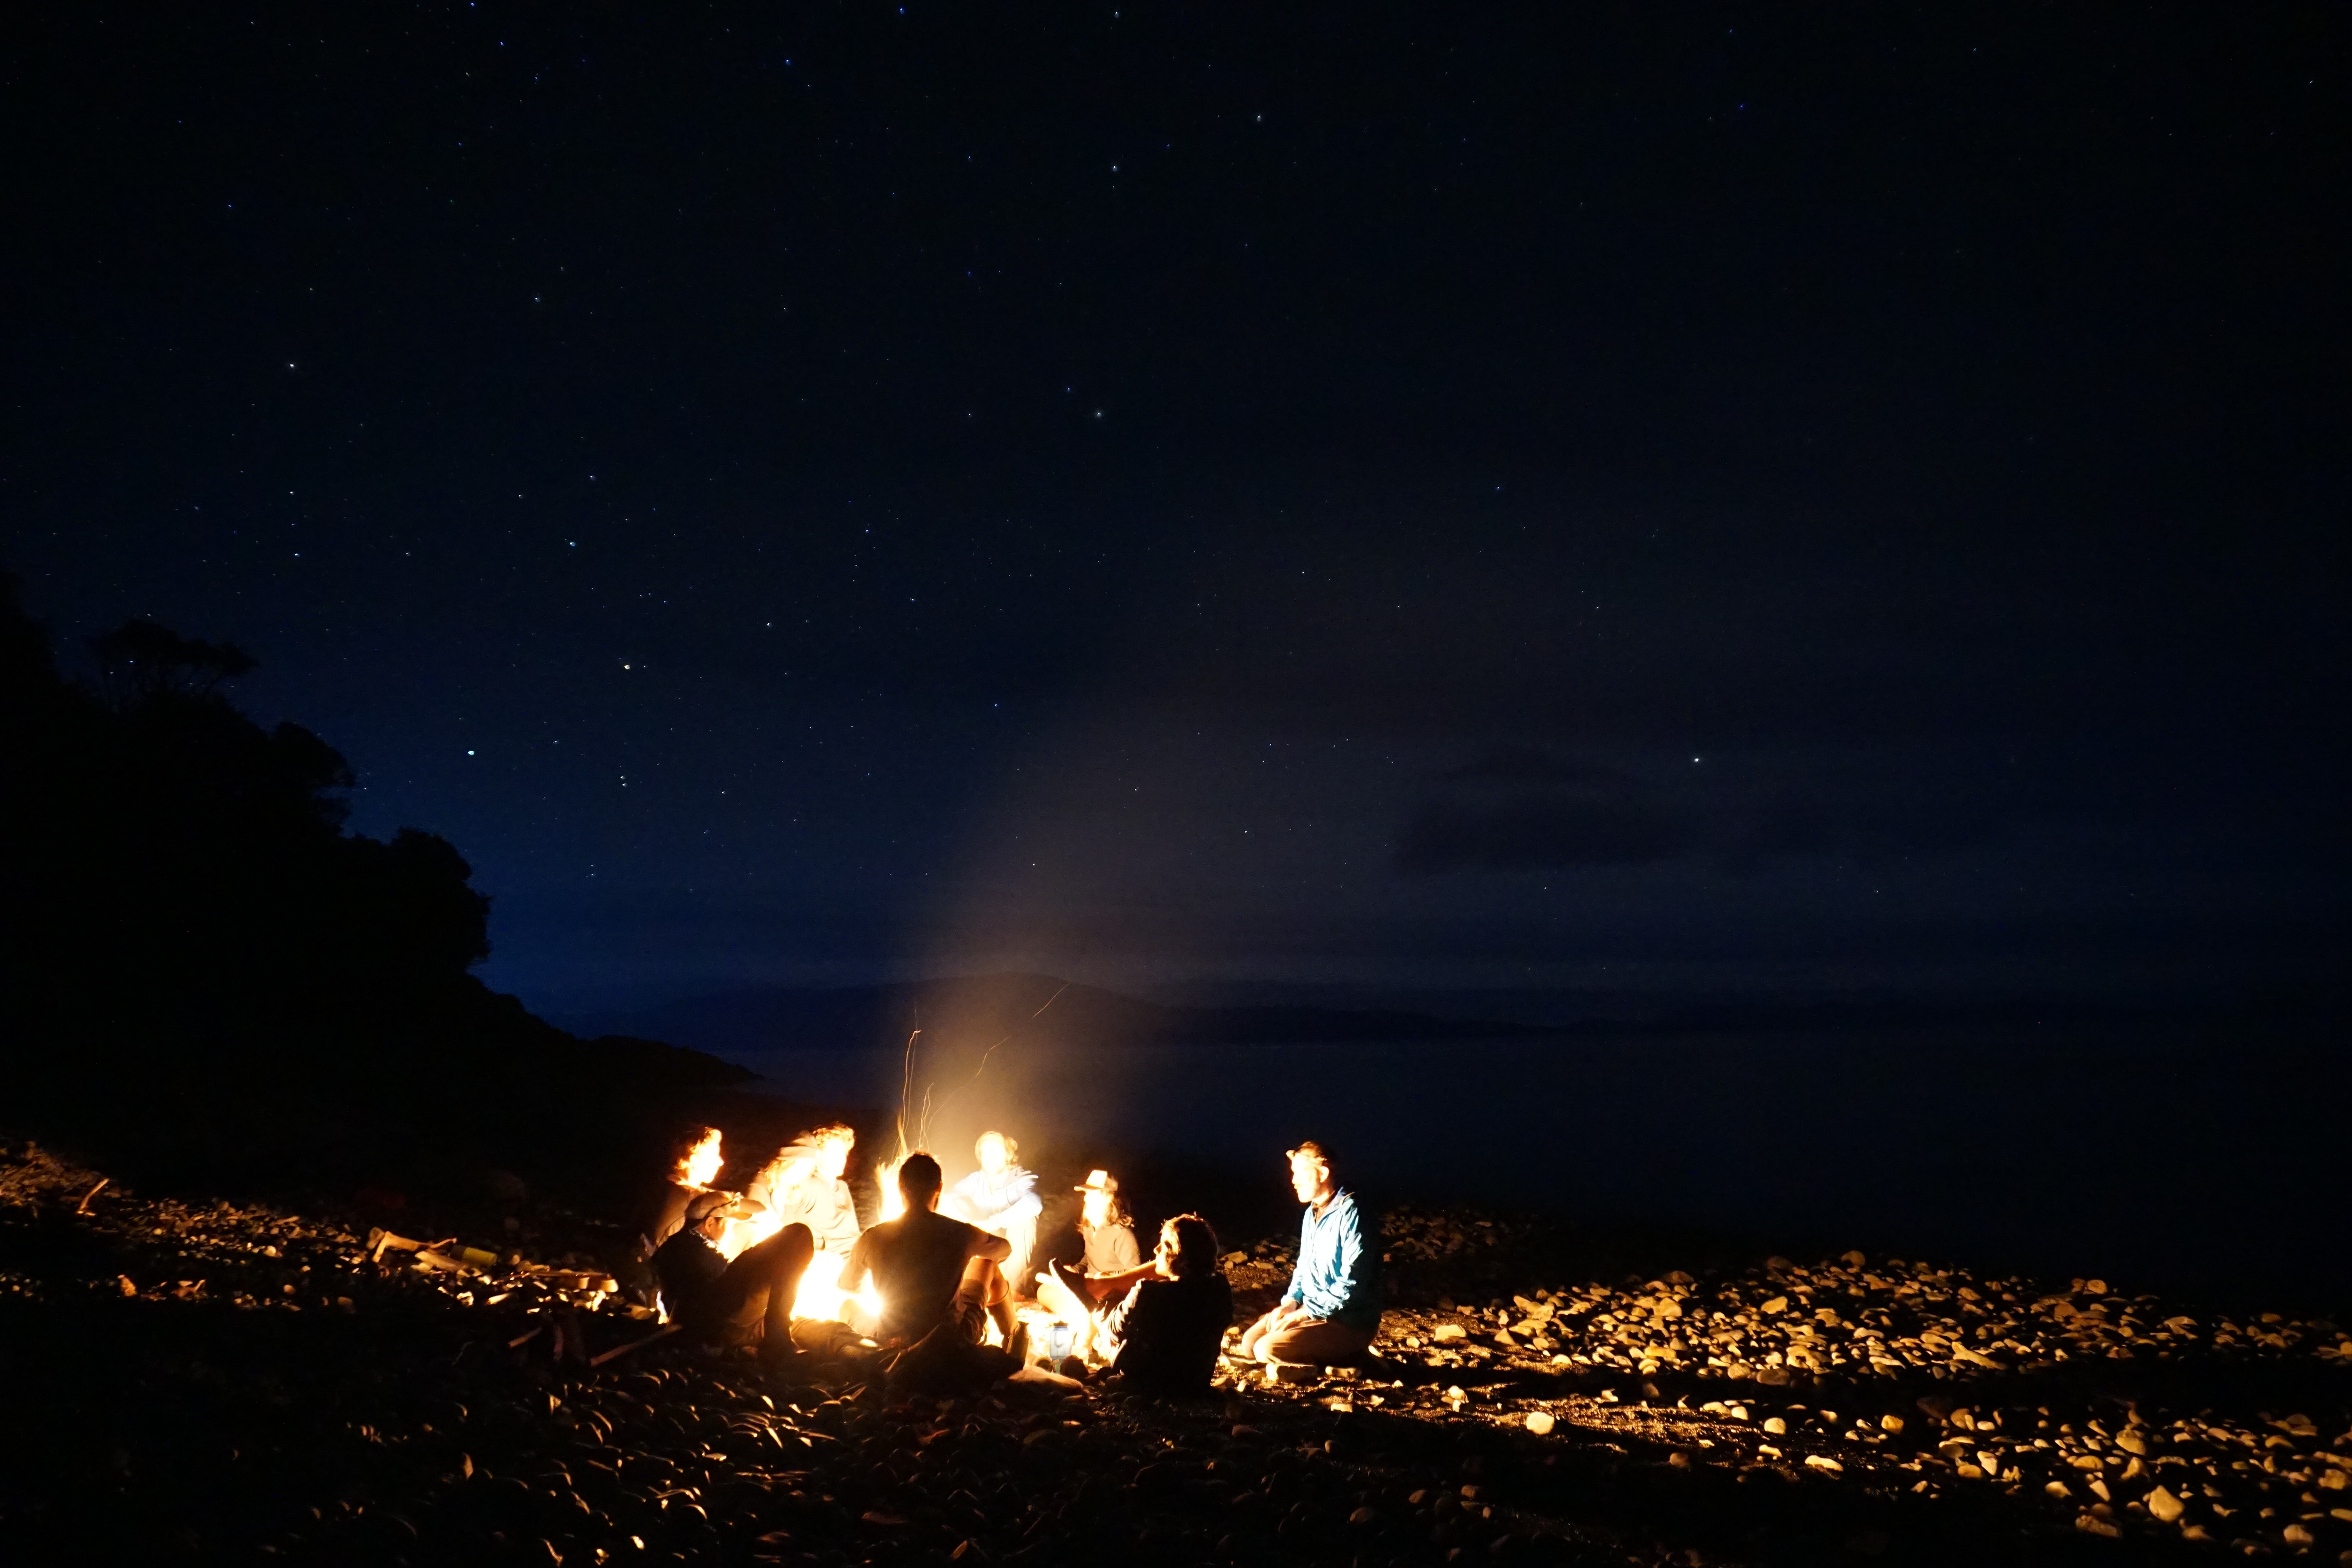 Sittng around a campfire